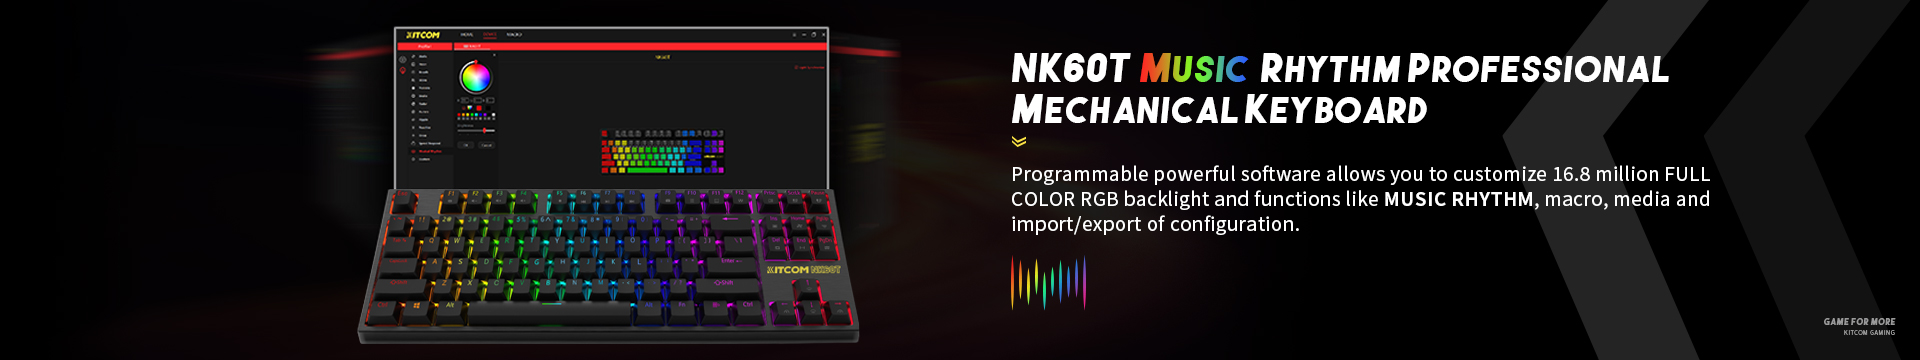 NK60T Music Rhythm Mechanical Keyboard